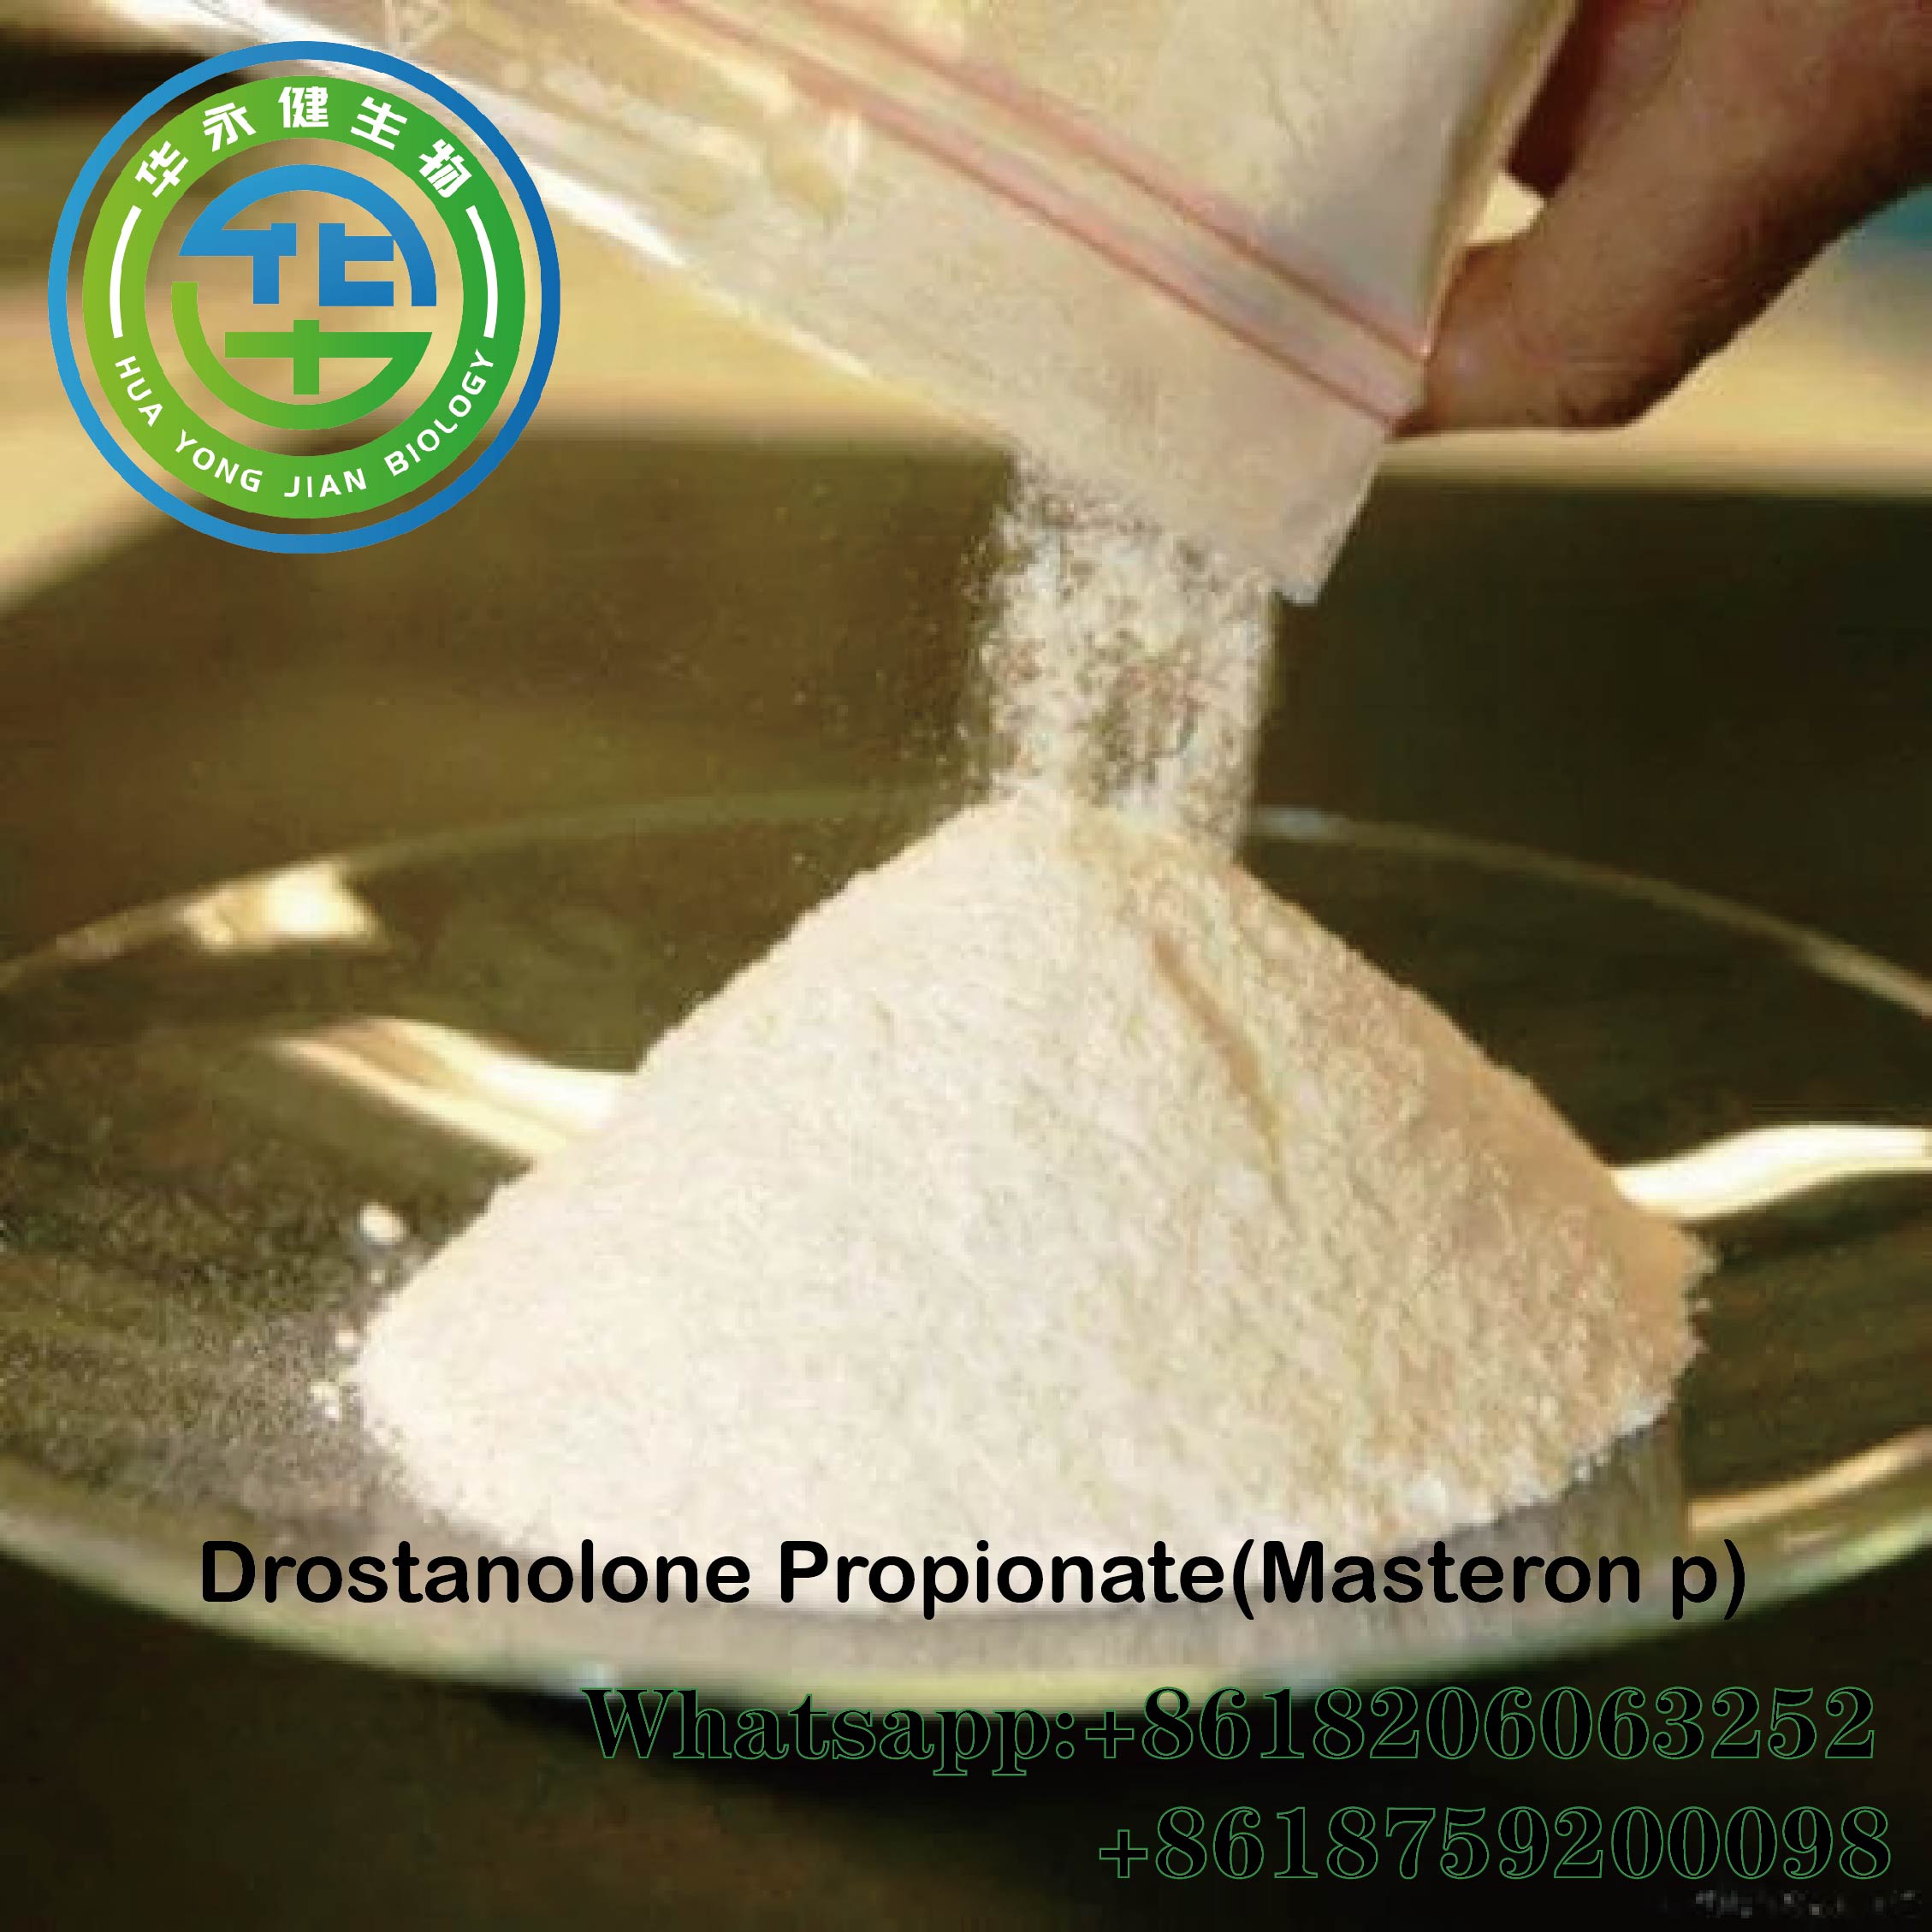 Anabolics Drostanolone Propionate Cas 521-12-0 Pols d'esteroides bruts Masteron p amb lliurament segur Imatge destacada acceptada per Paypal